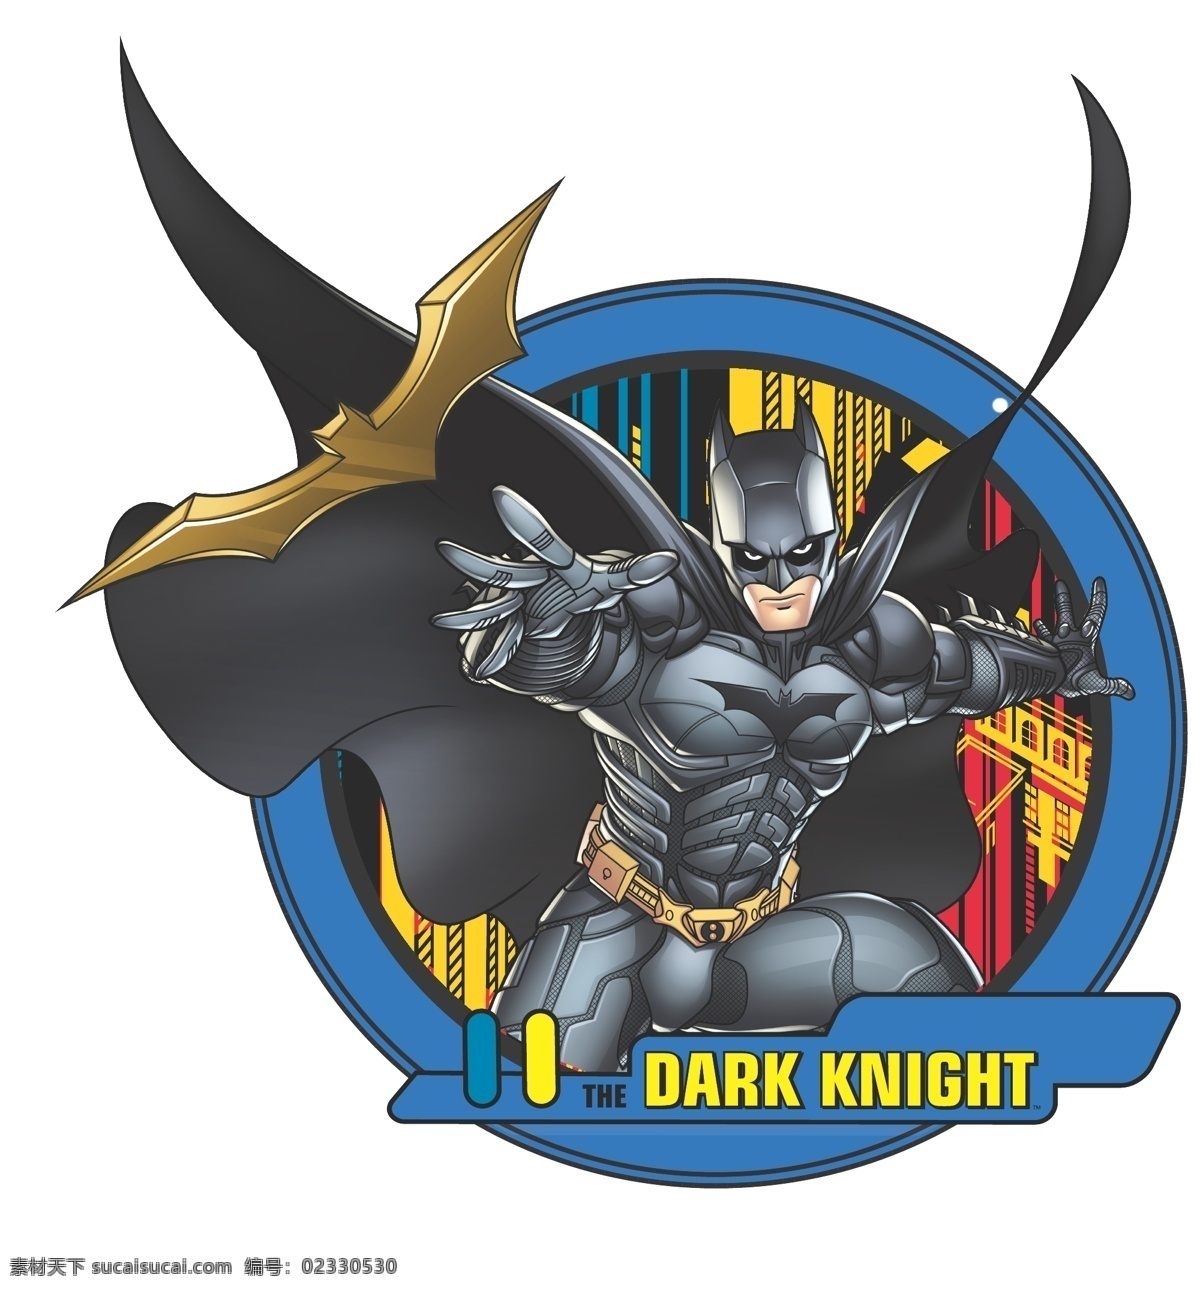 蝙蝠侠 batman 黑暗骑士 华纳 dc漫画 超级英雄 英雄联盟 卡通形象 其他人物 矢量人物 矢量